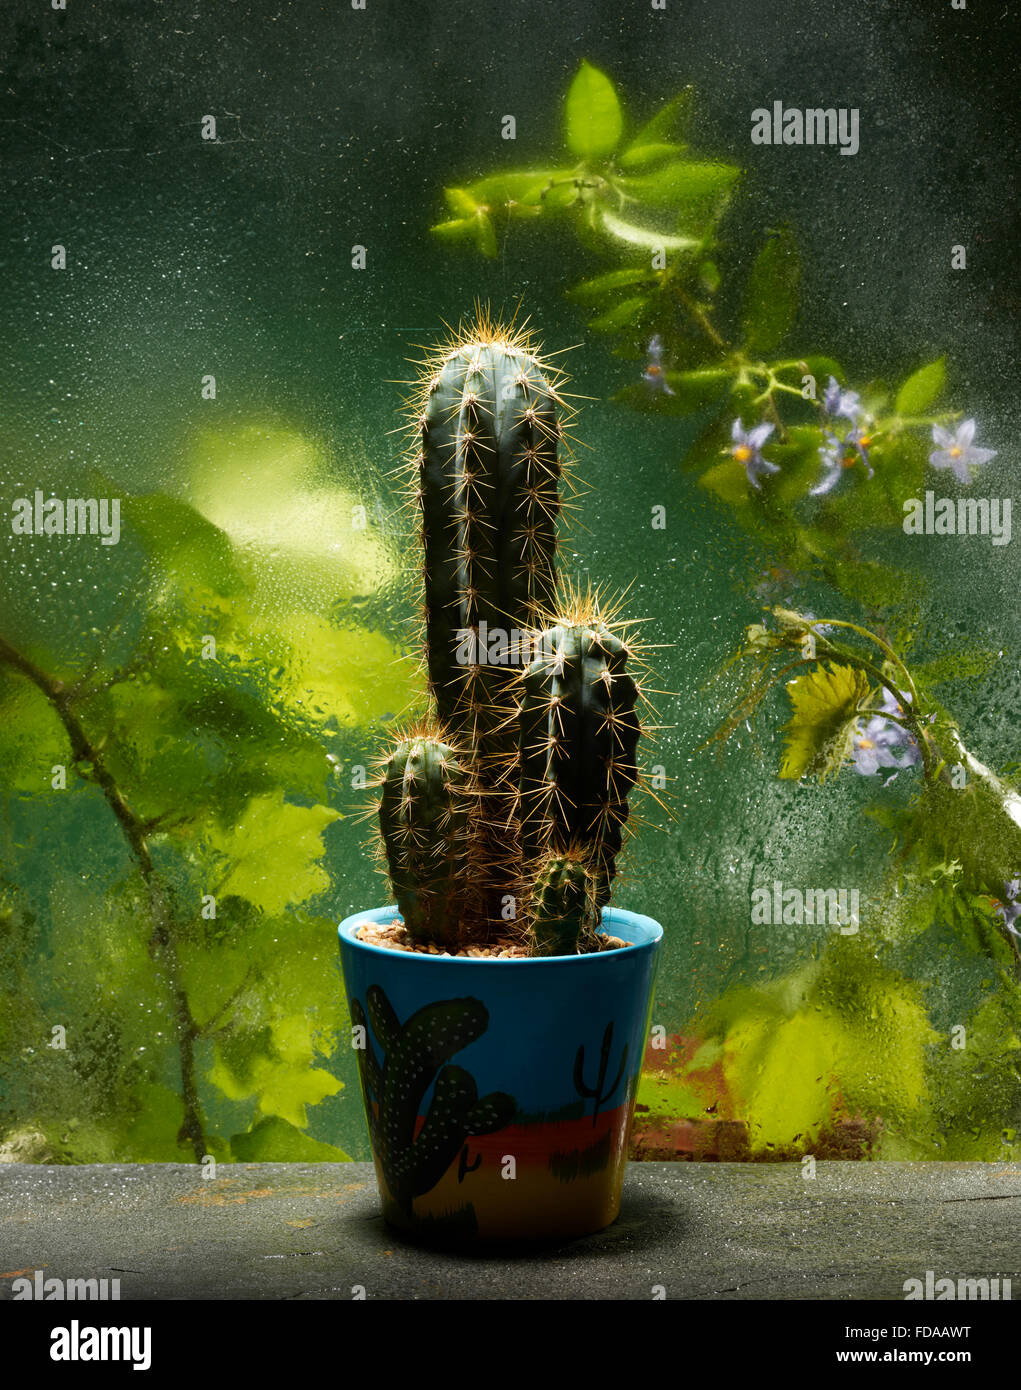 Ein Kaktus in einem Topf auf der Gewächshaus-Bank Stockfoto